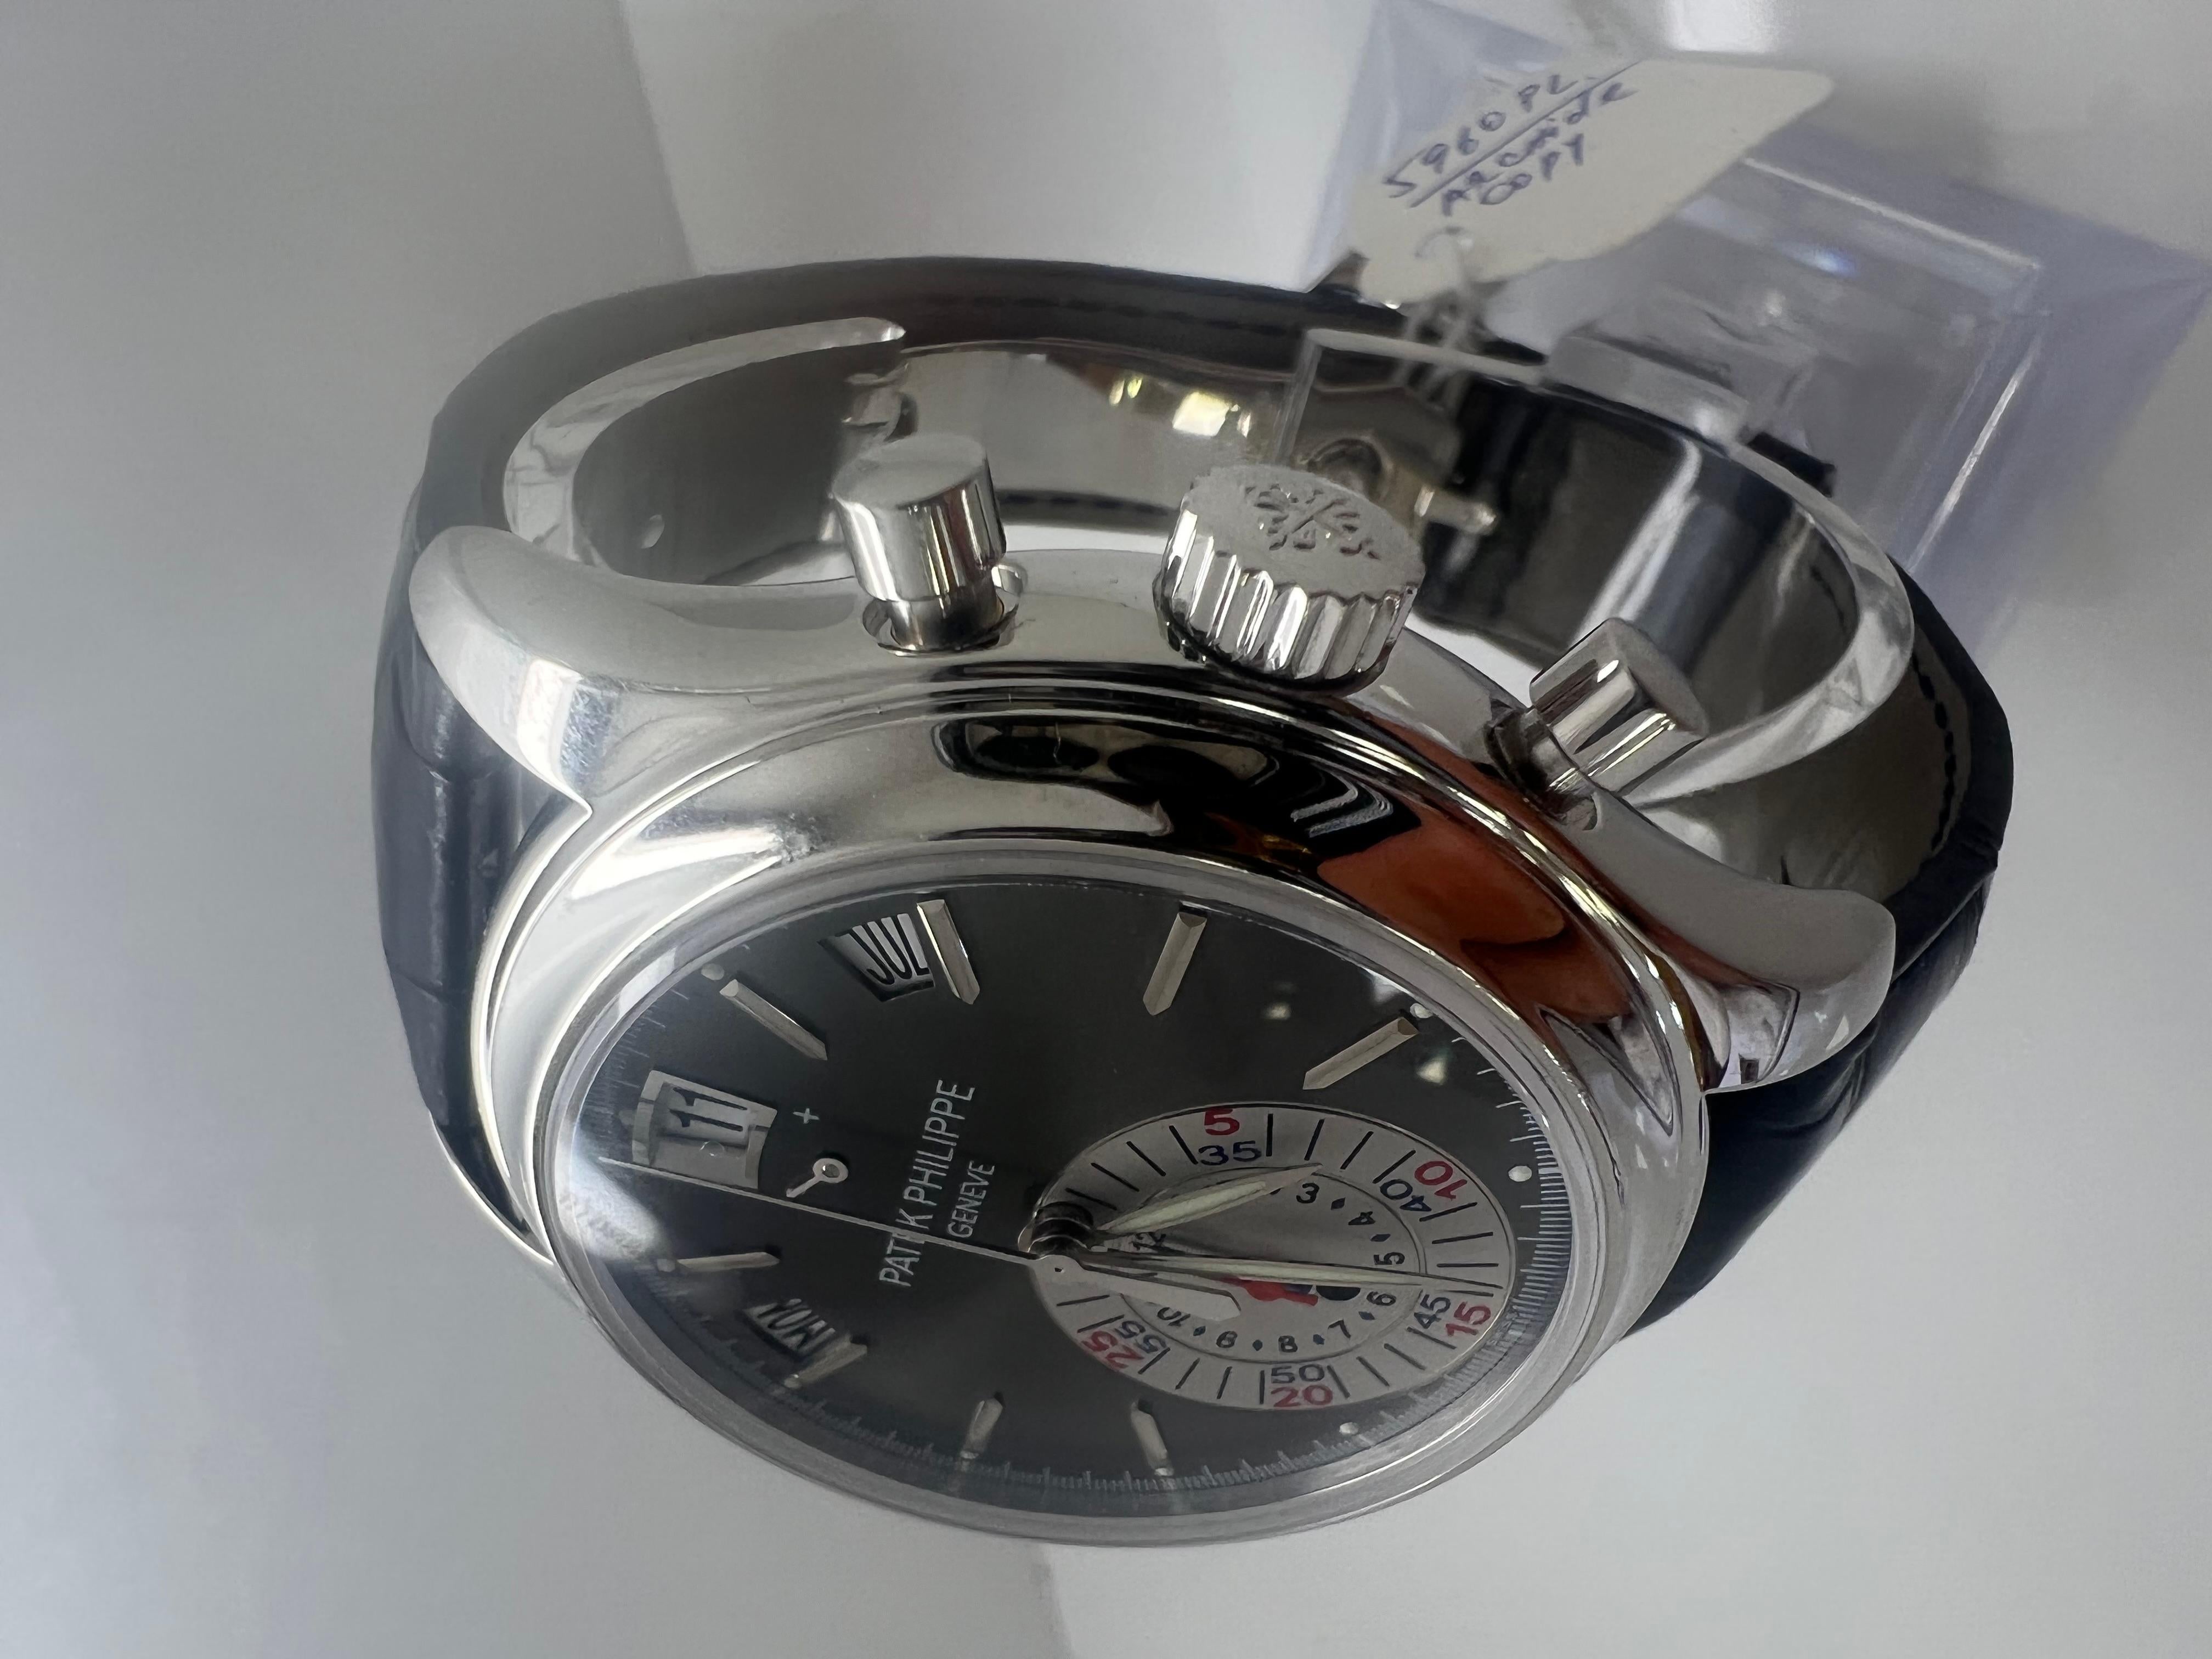 Patek Philippe 5960p

2006

Platinum Men's 

40mm Watch

archive papers copy

excellent condition

shop with confidence